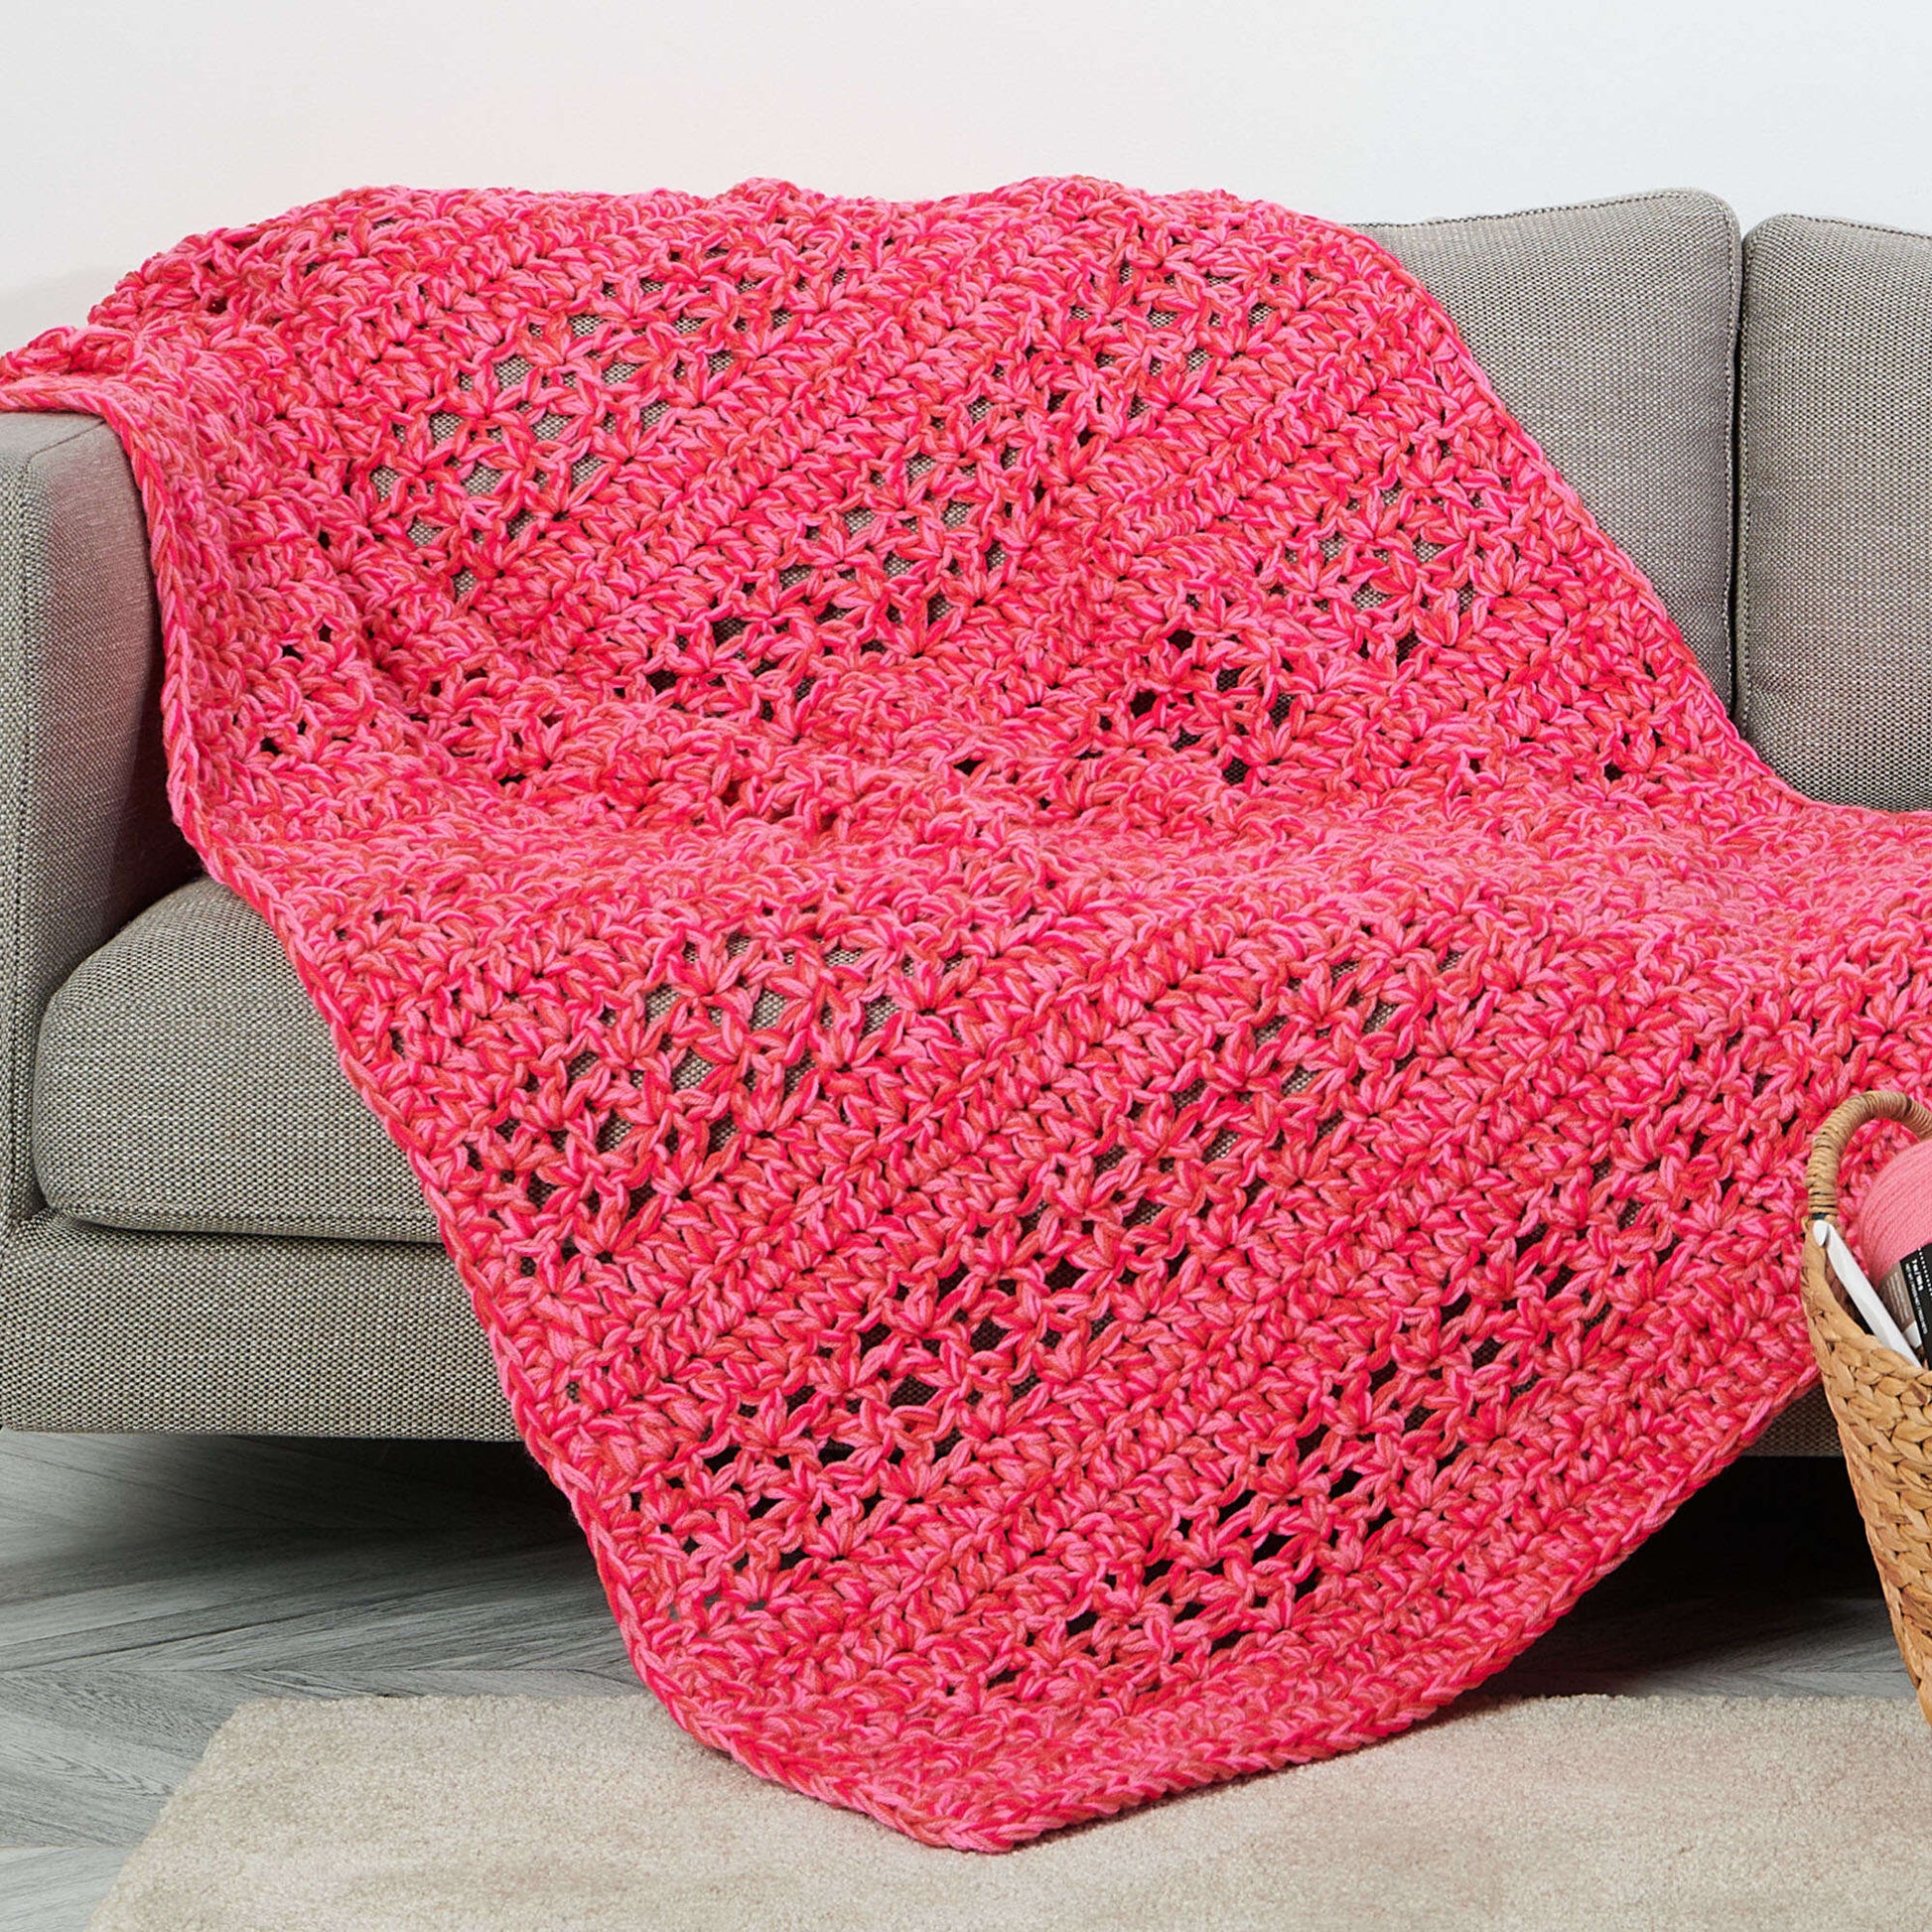 Red Heart Weekend Speedy Crochet Kit + Tutorial